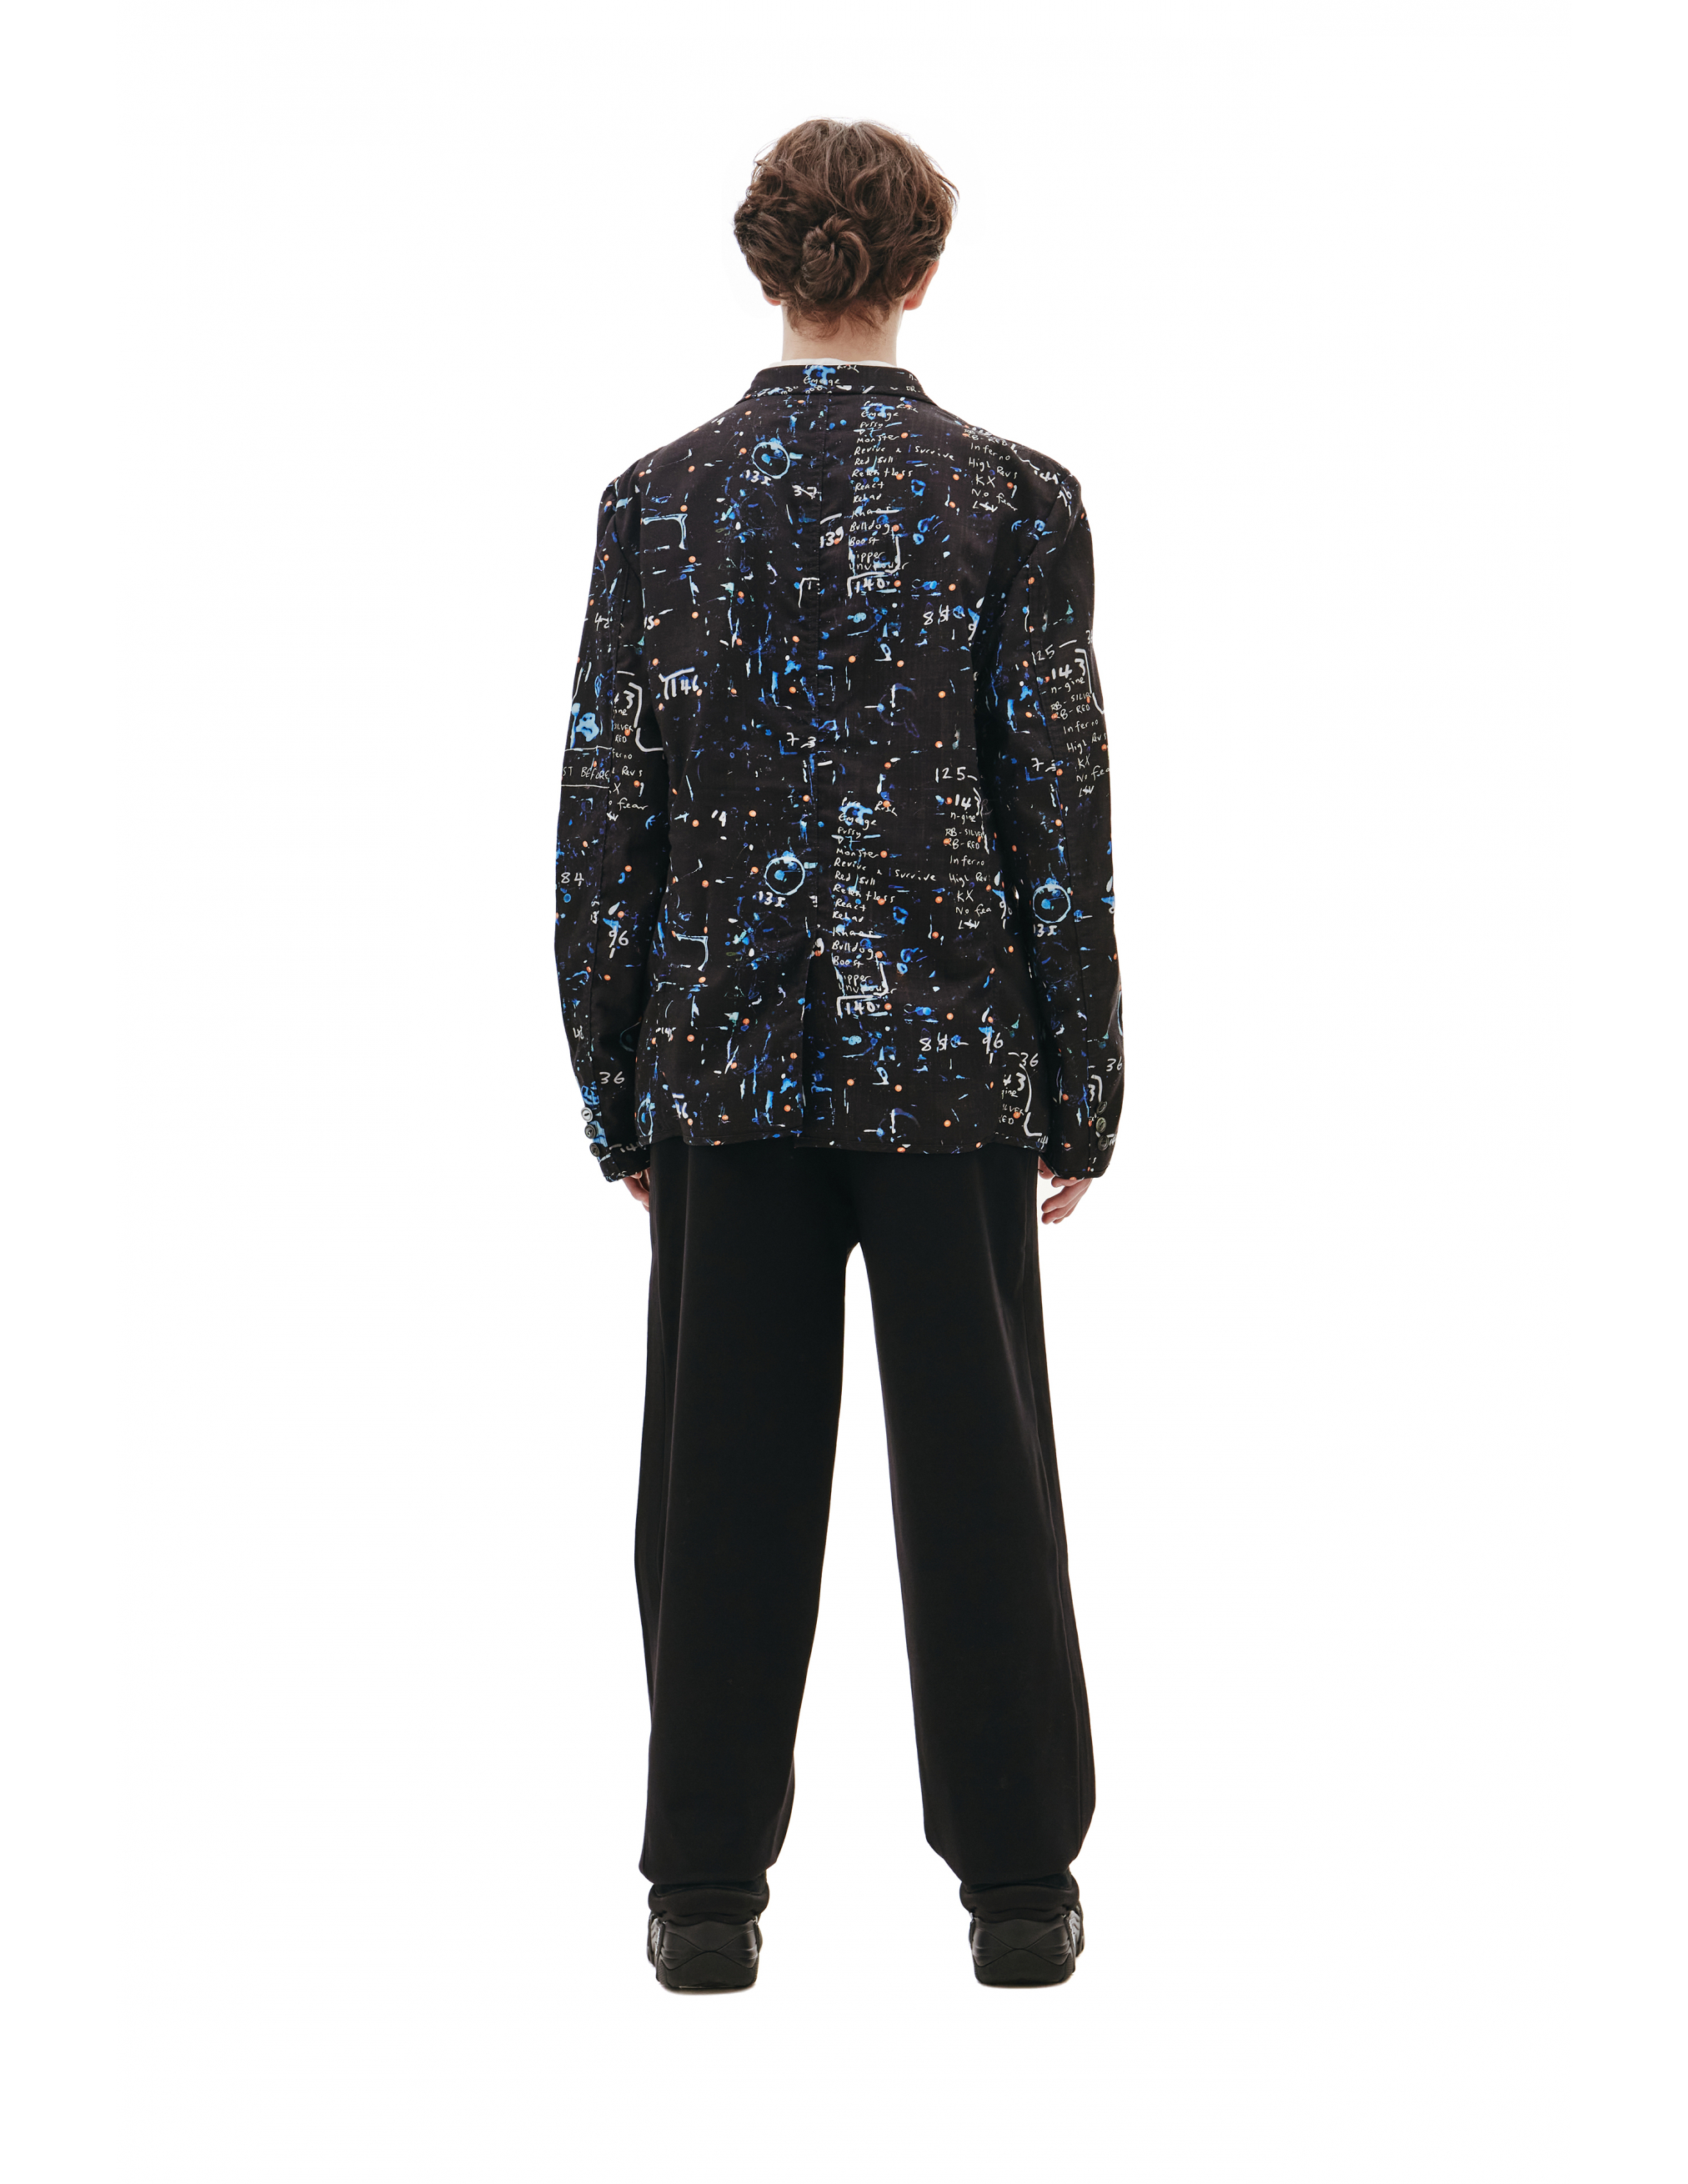 Черный пиджак из шерсти - Junya Watanabe WG-J004-051-1 Фото 3